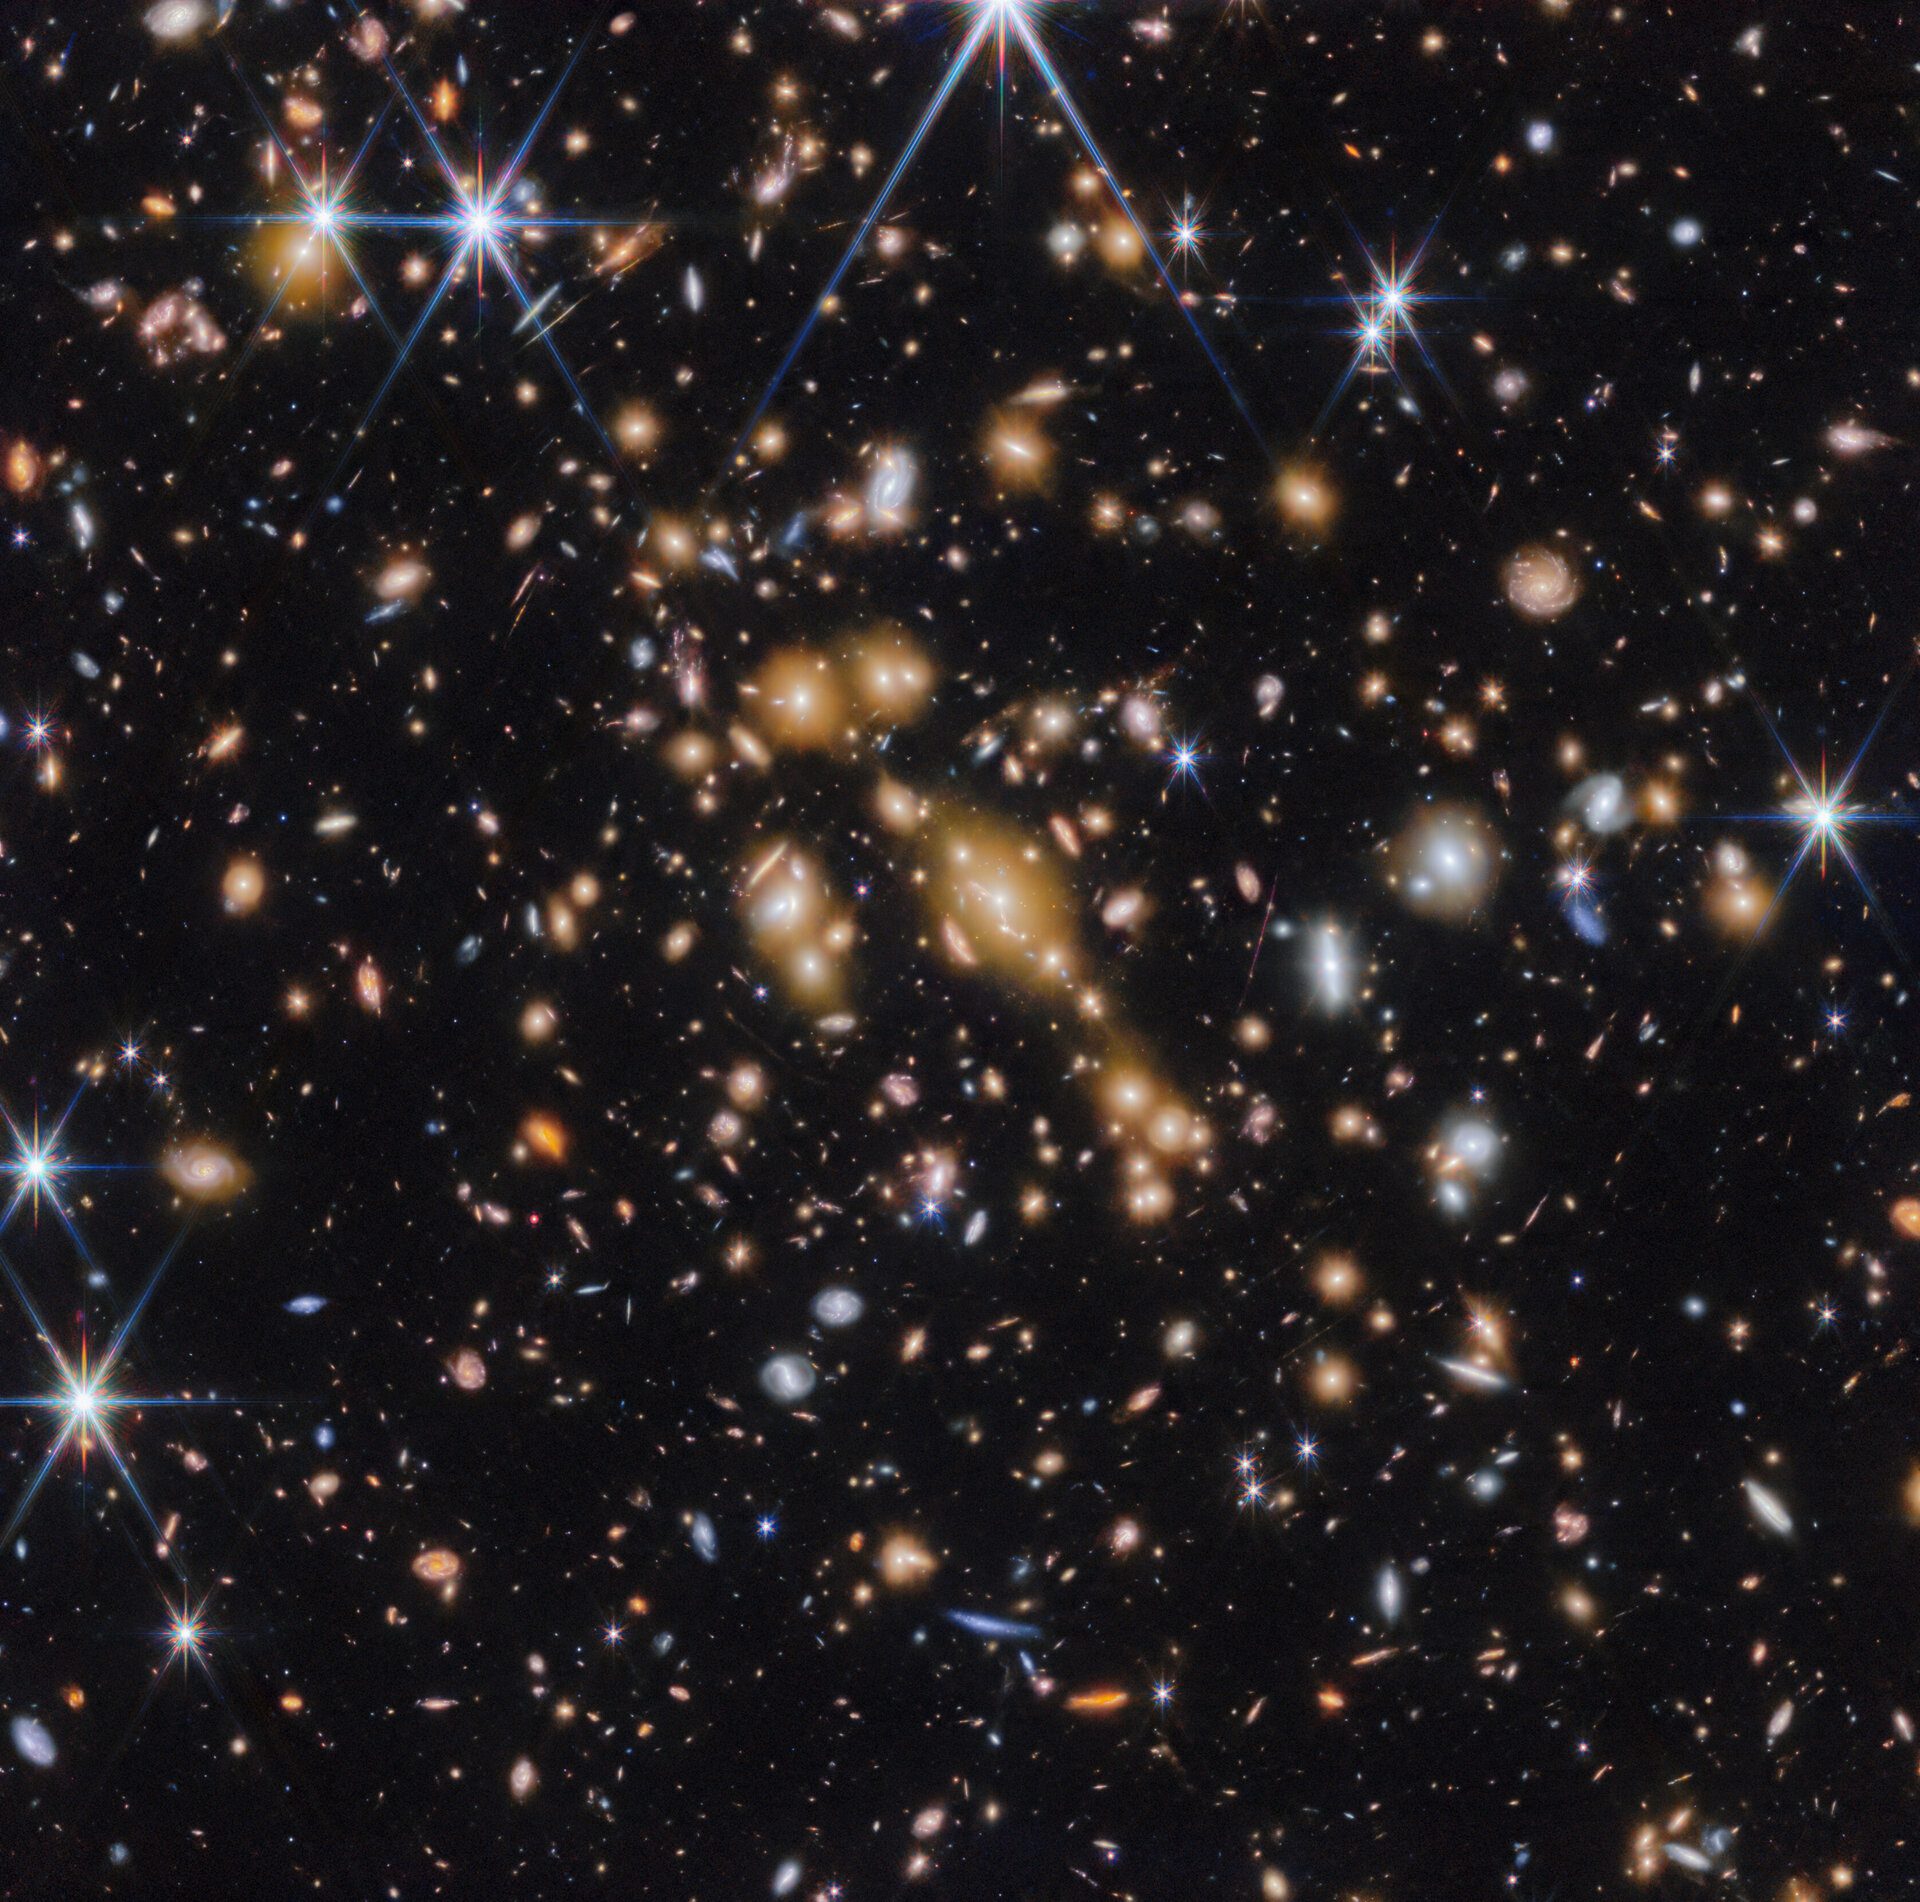 Campo de galaxias sobre el fondo del espacio negro.  En el medio hay un grupo de docenas de galaxias amarillas que forman un cúmulo de galaxias en primer plano.  Entre ellos se encuentran rasgos lineales distorsionados, que a menudo parecen seguir círculos concéntricos invisibles que se curvan alrededor del centro de la imagen.  Las características lineales se crean cuando la luz de la galaxia de fondo se desvía y se amplifica mediante lentes gravitacionales.  La imagen está salpicada de una variedad de galaxias rojas y azules de colores brillantes y de diferentes formas, lo que la hace parecer densamente poblada.